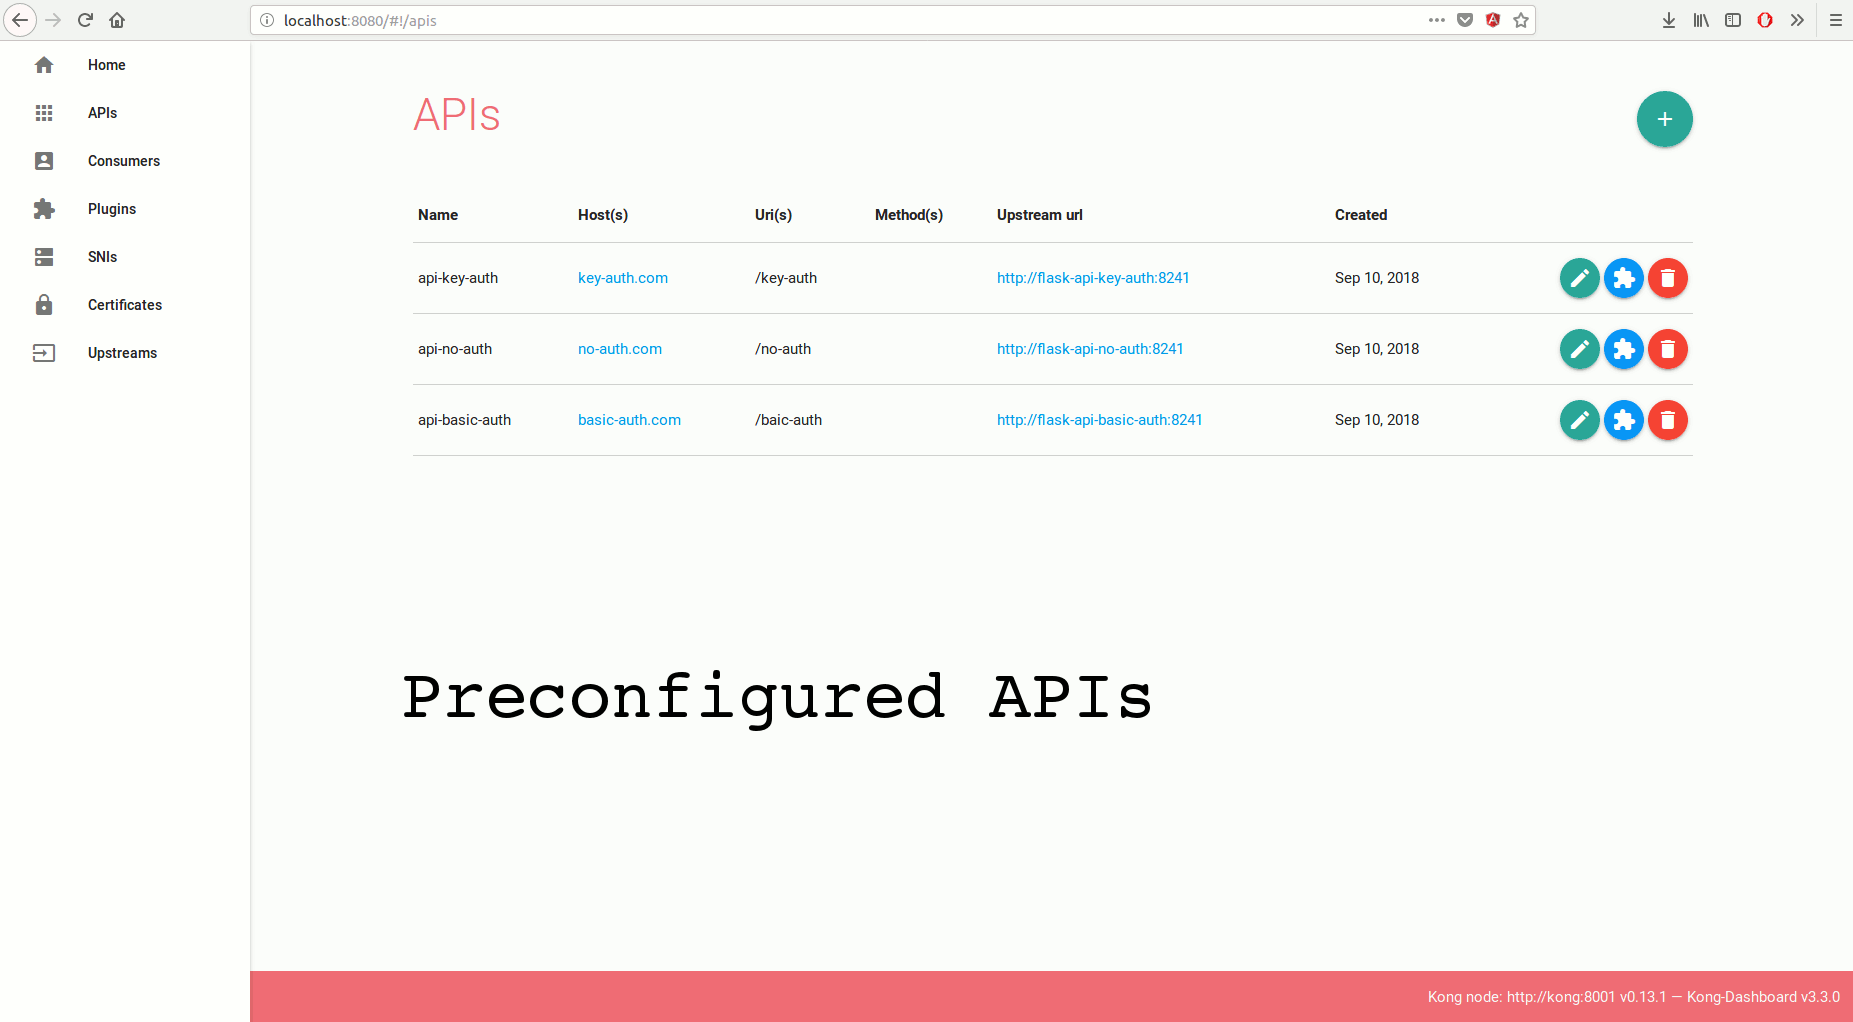 APIs page